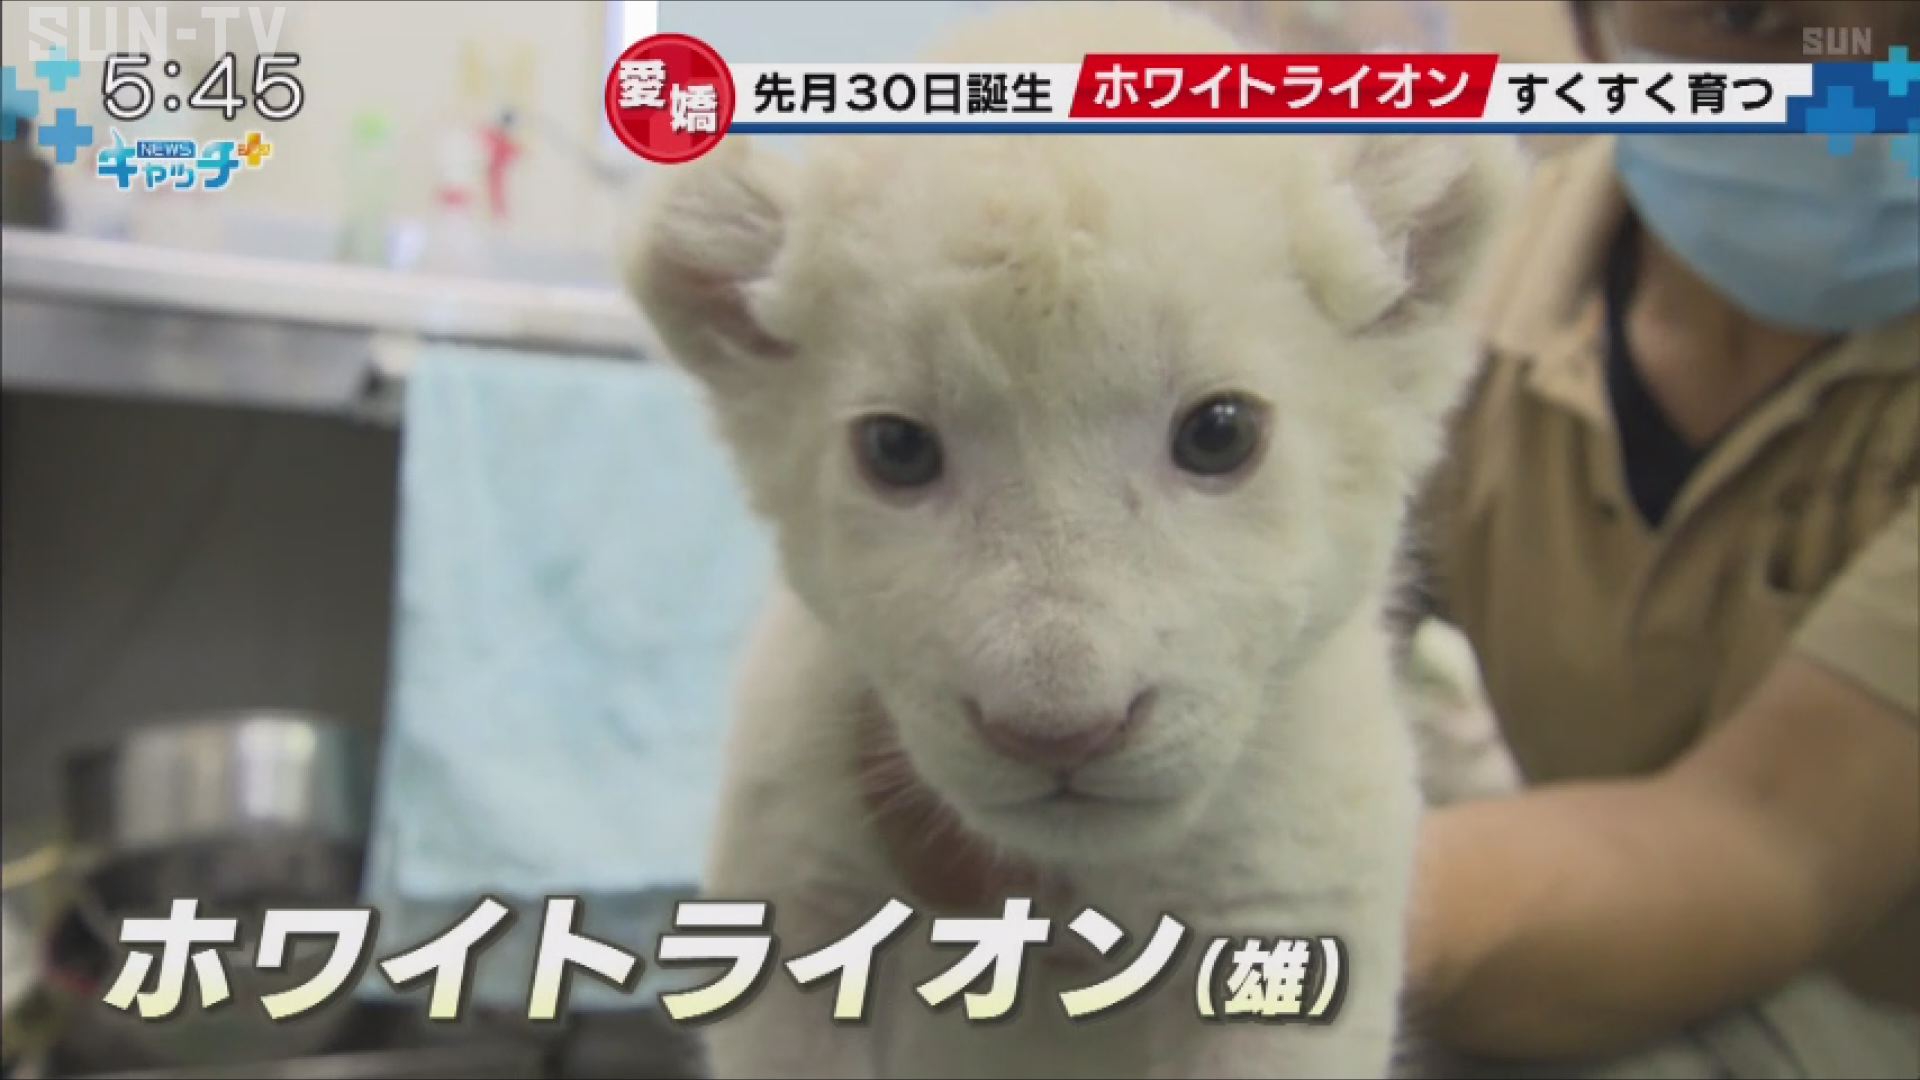 ホワイトライオンの赤ちゃん元気に育つ 姫路セントラルパーク サンテレビニュース